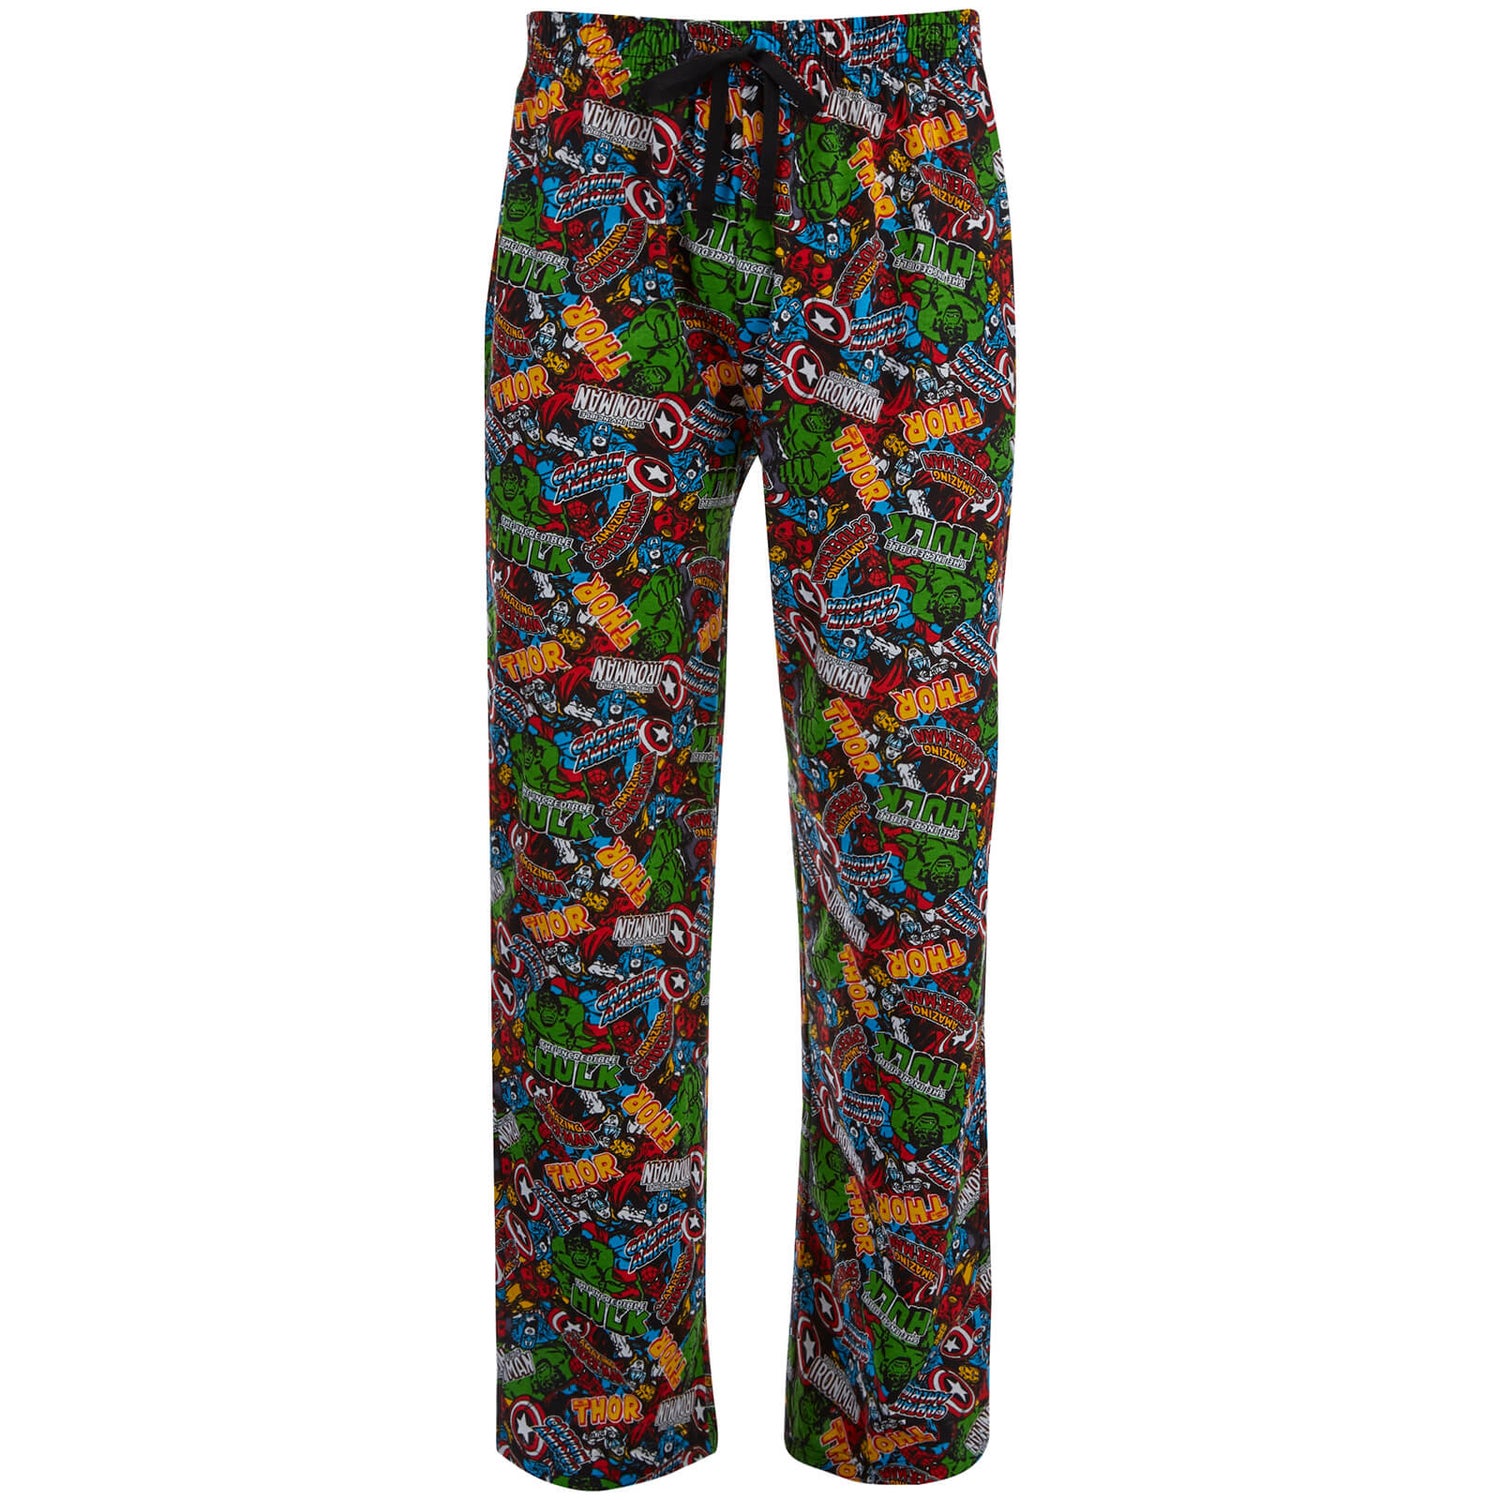 medio litro mediodía habla Pantalón pijama Marvel Comics Los Vengadores - Hombre - Multicolor  Merchandise | Zavvi España